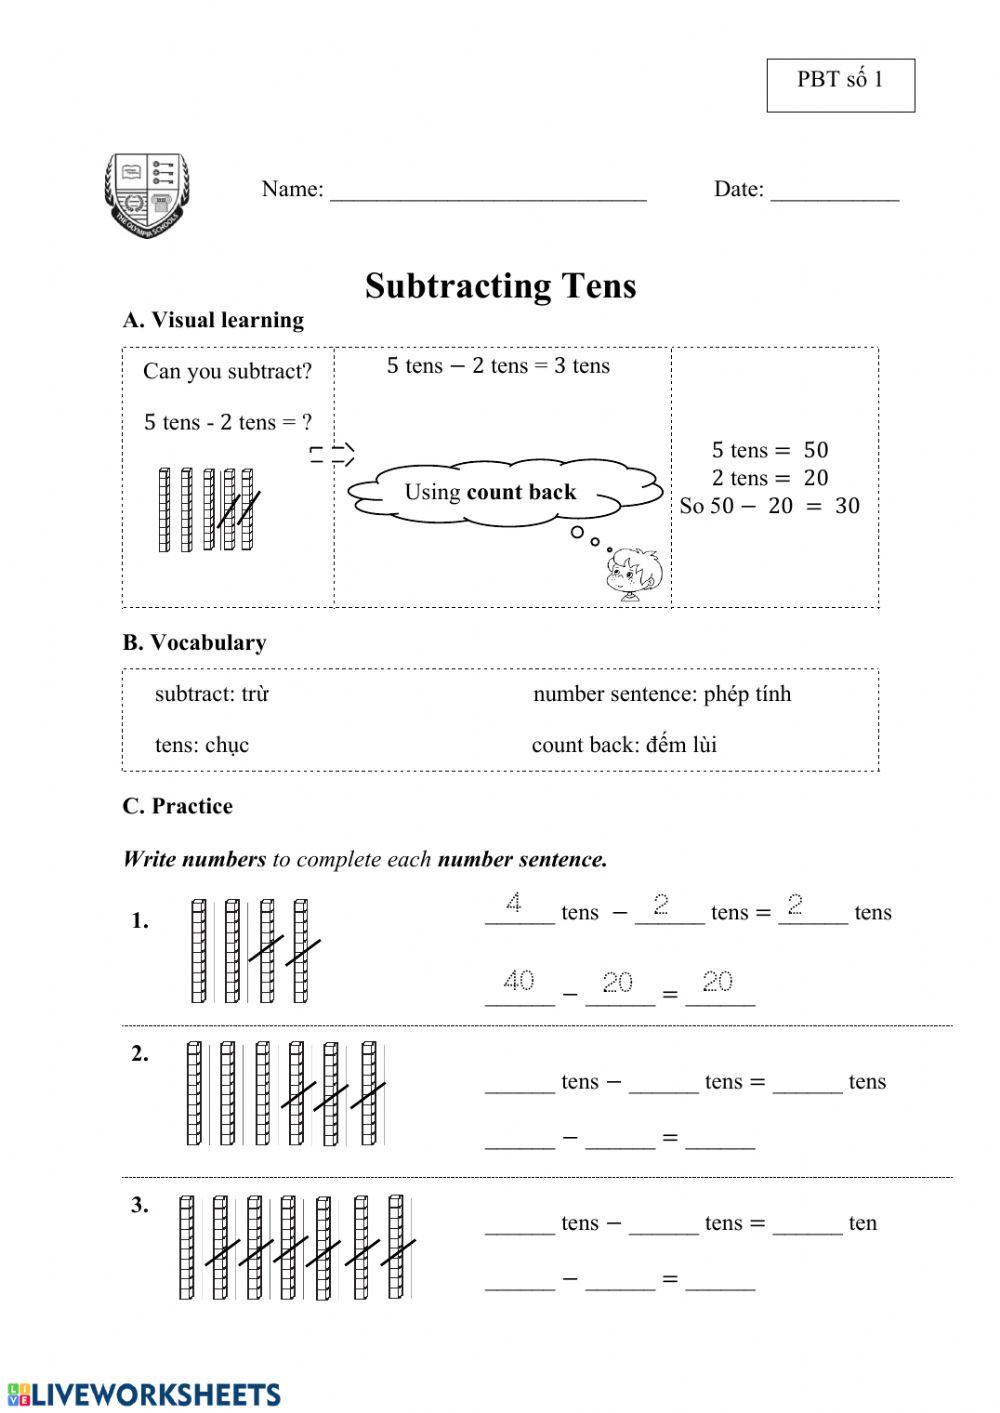 Subtracting Tens (PBT số 1)